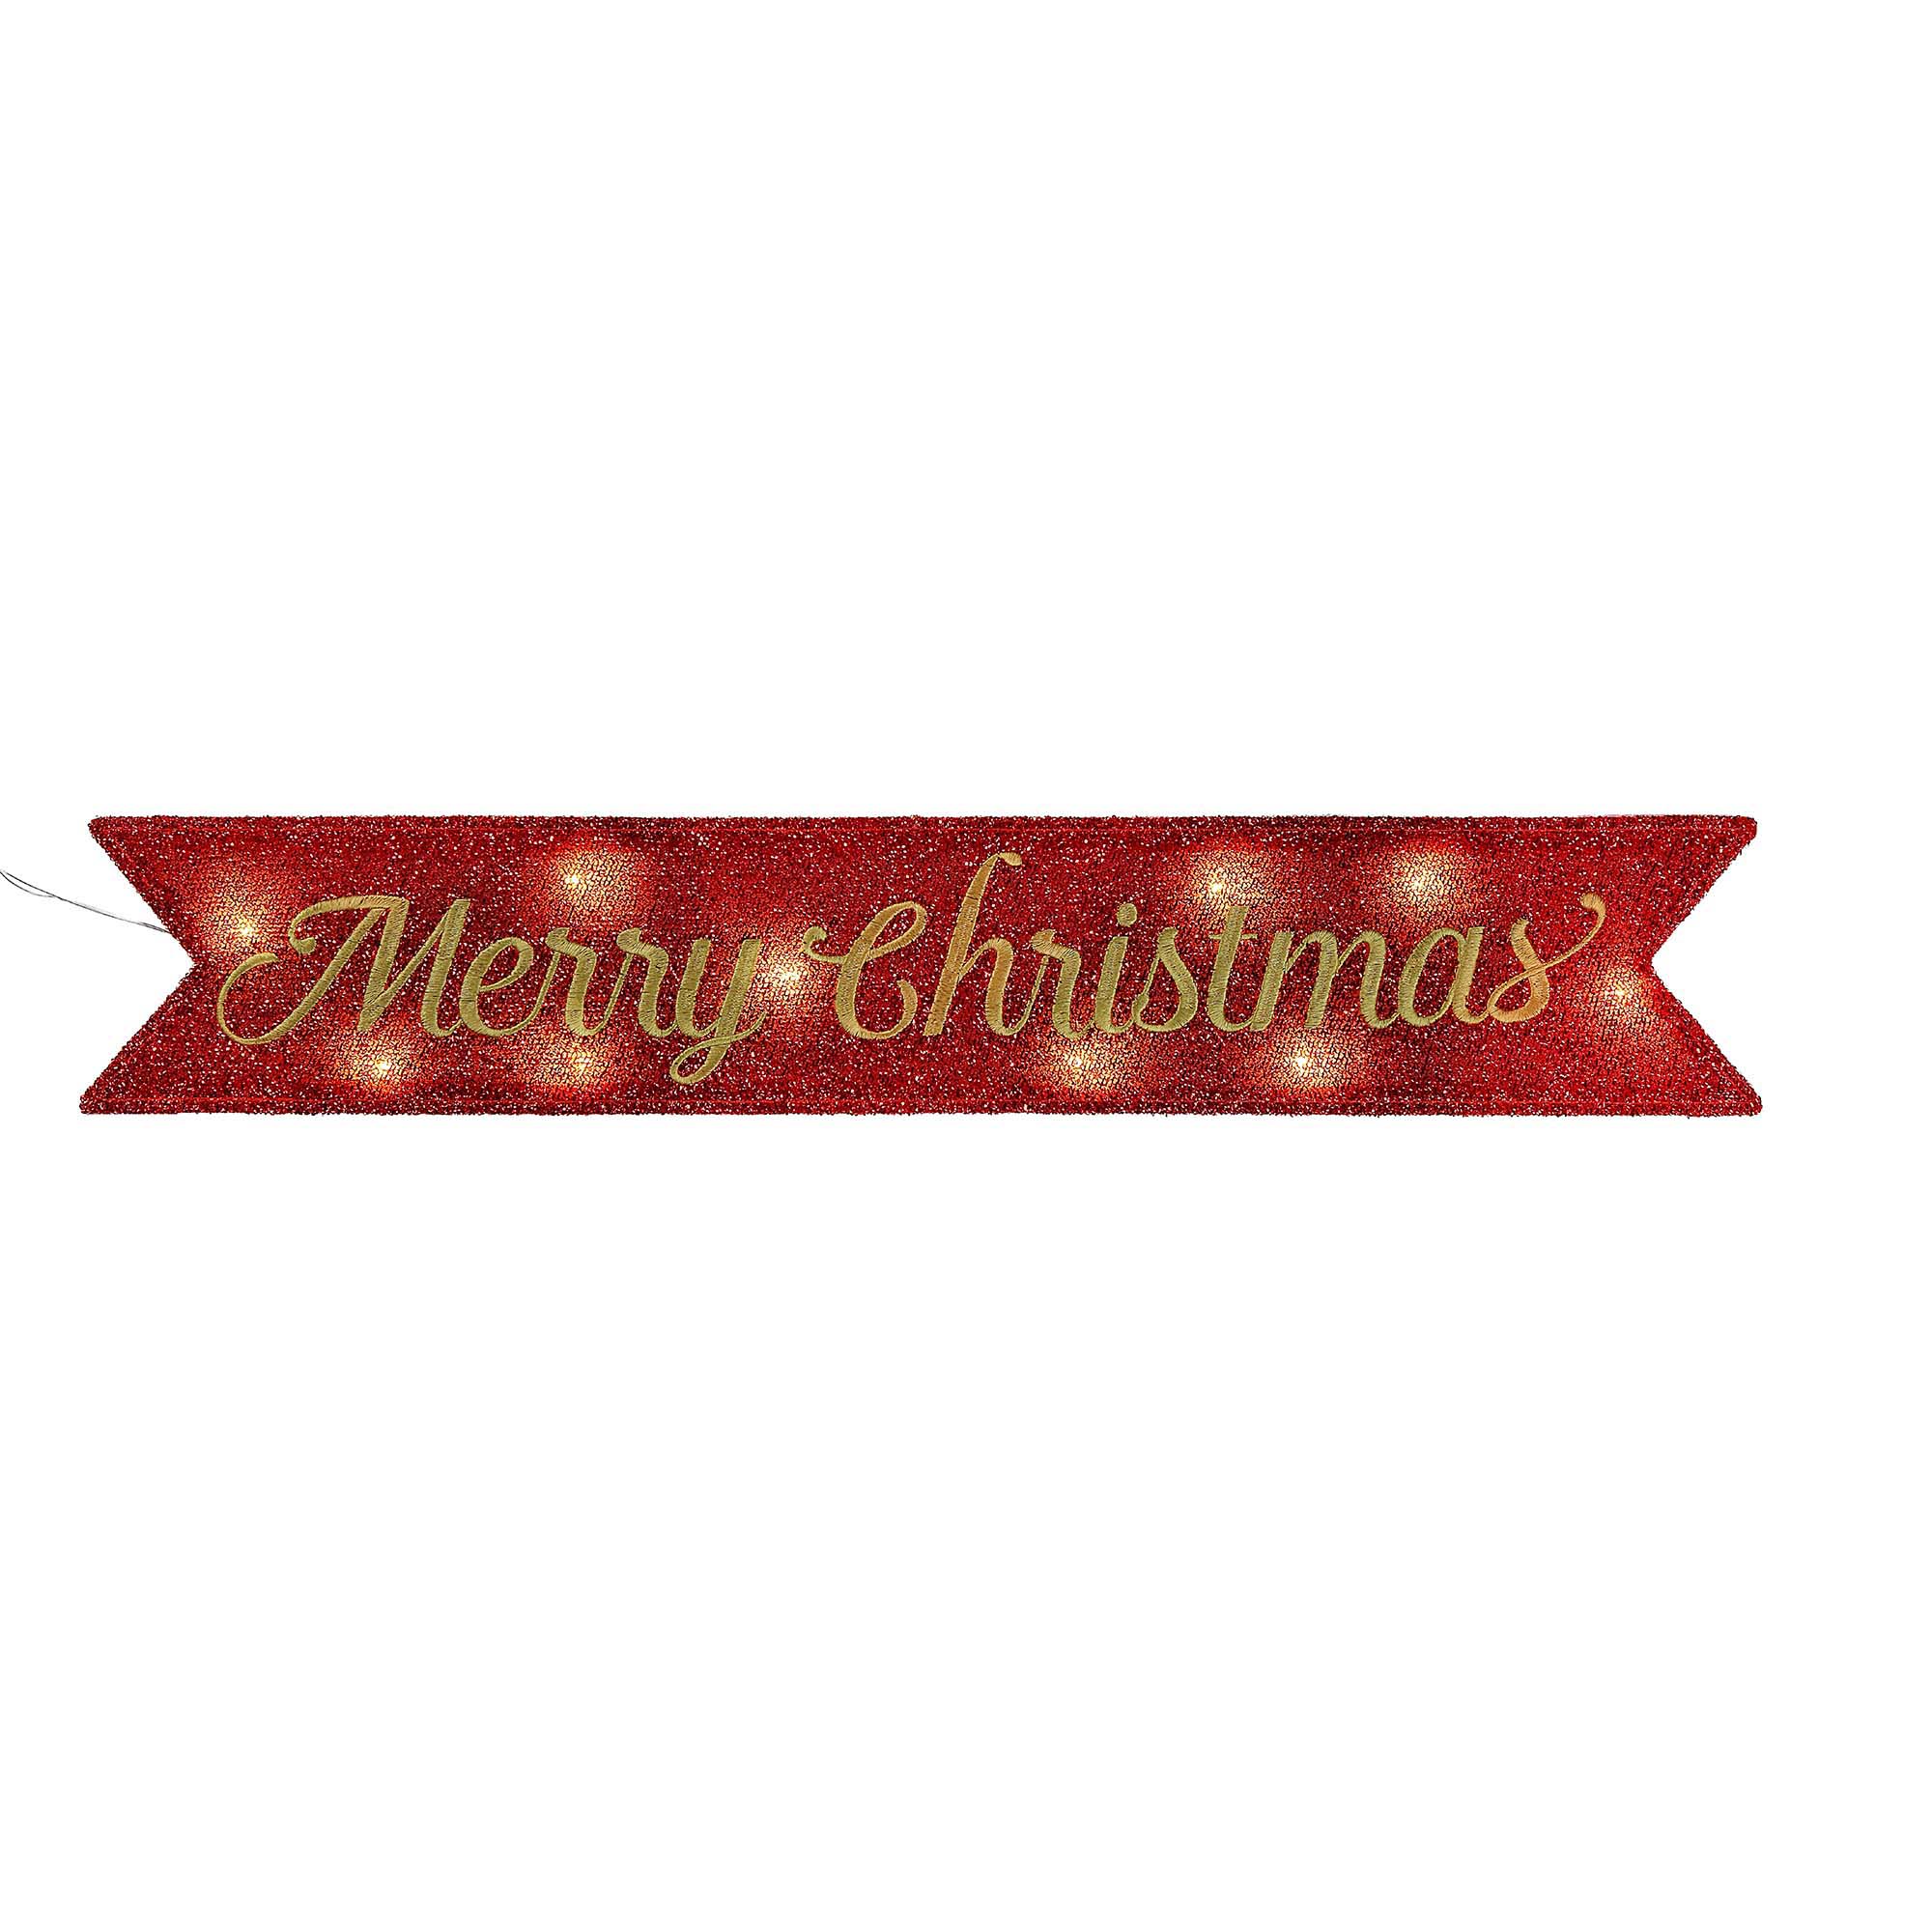 Mr Christmas Inc Lighted Merry Christmas Banner- Red - Seasonal - Christmas - Indoor Decor